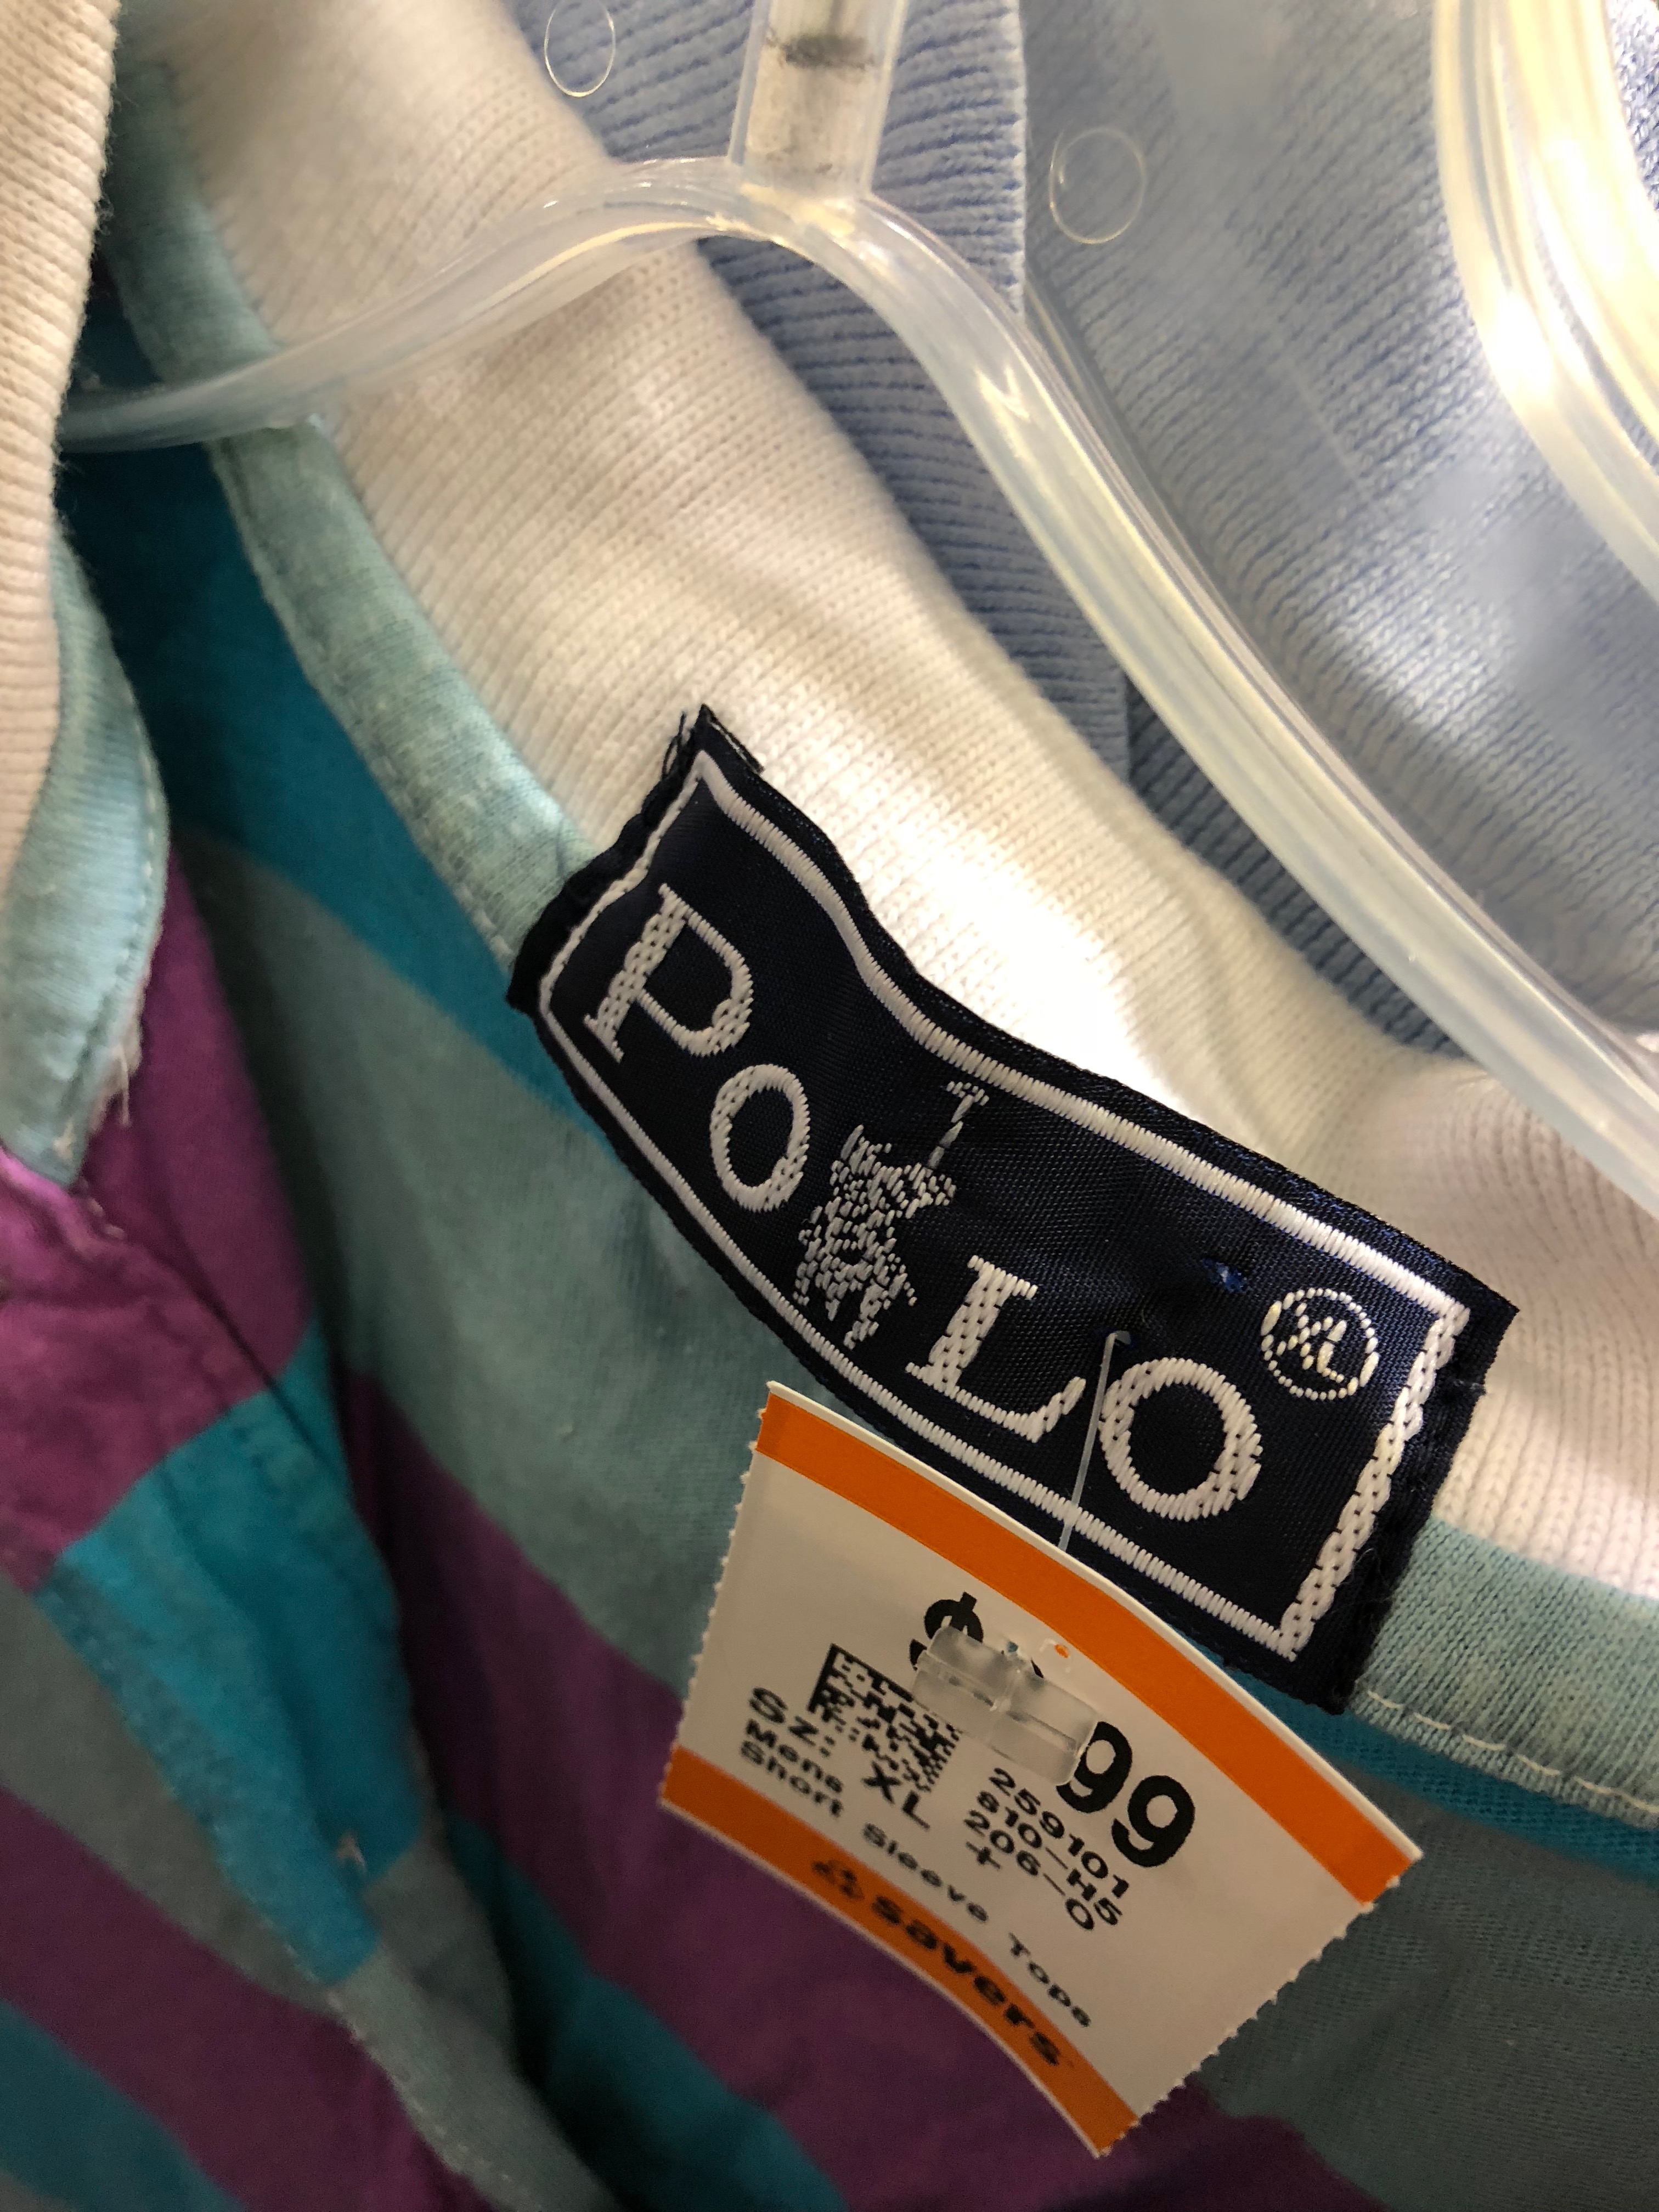 Bereiken Normalisatie Schrikken Authentication Guide: How to authenticate Polo Ralph Lauren garments –  SamTalksStyle